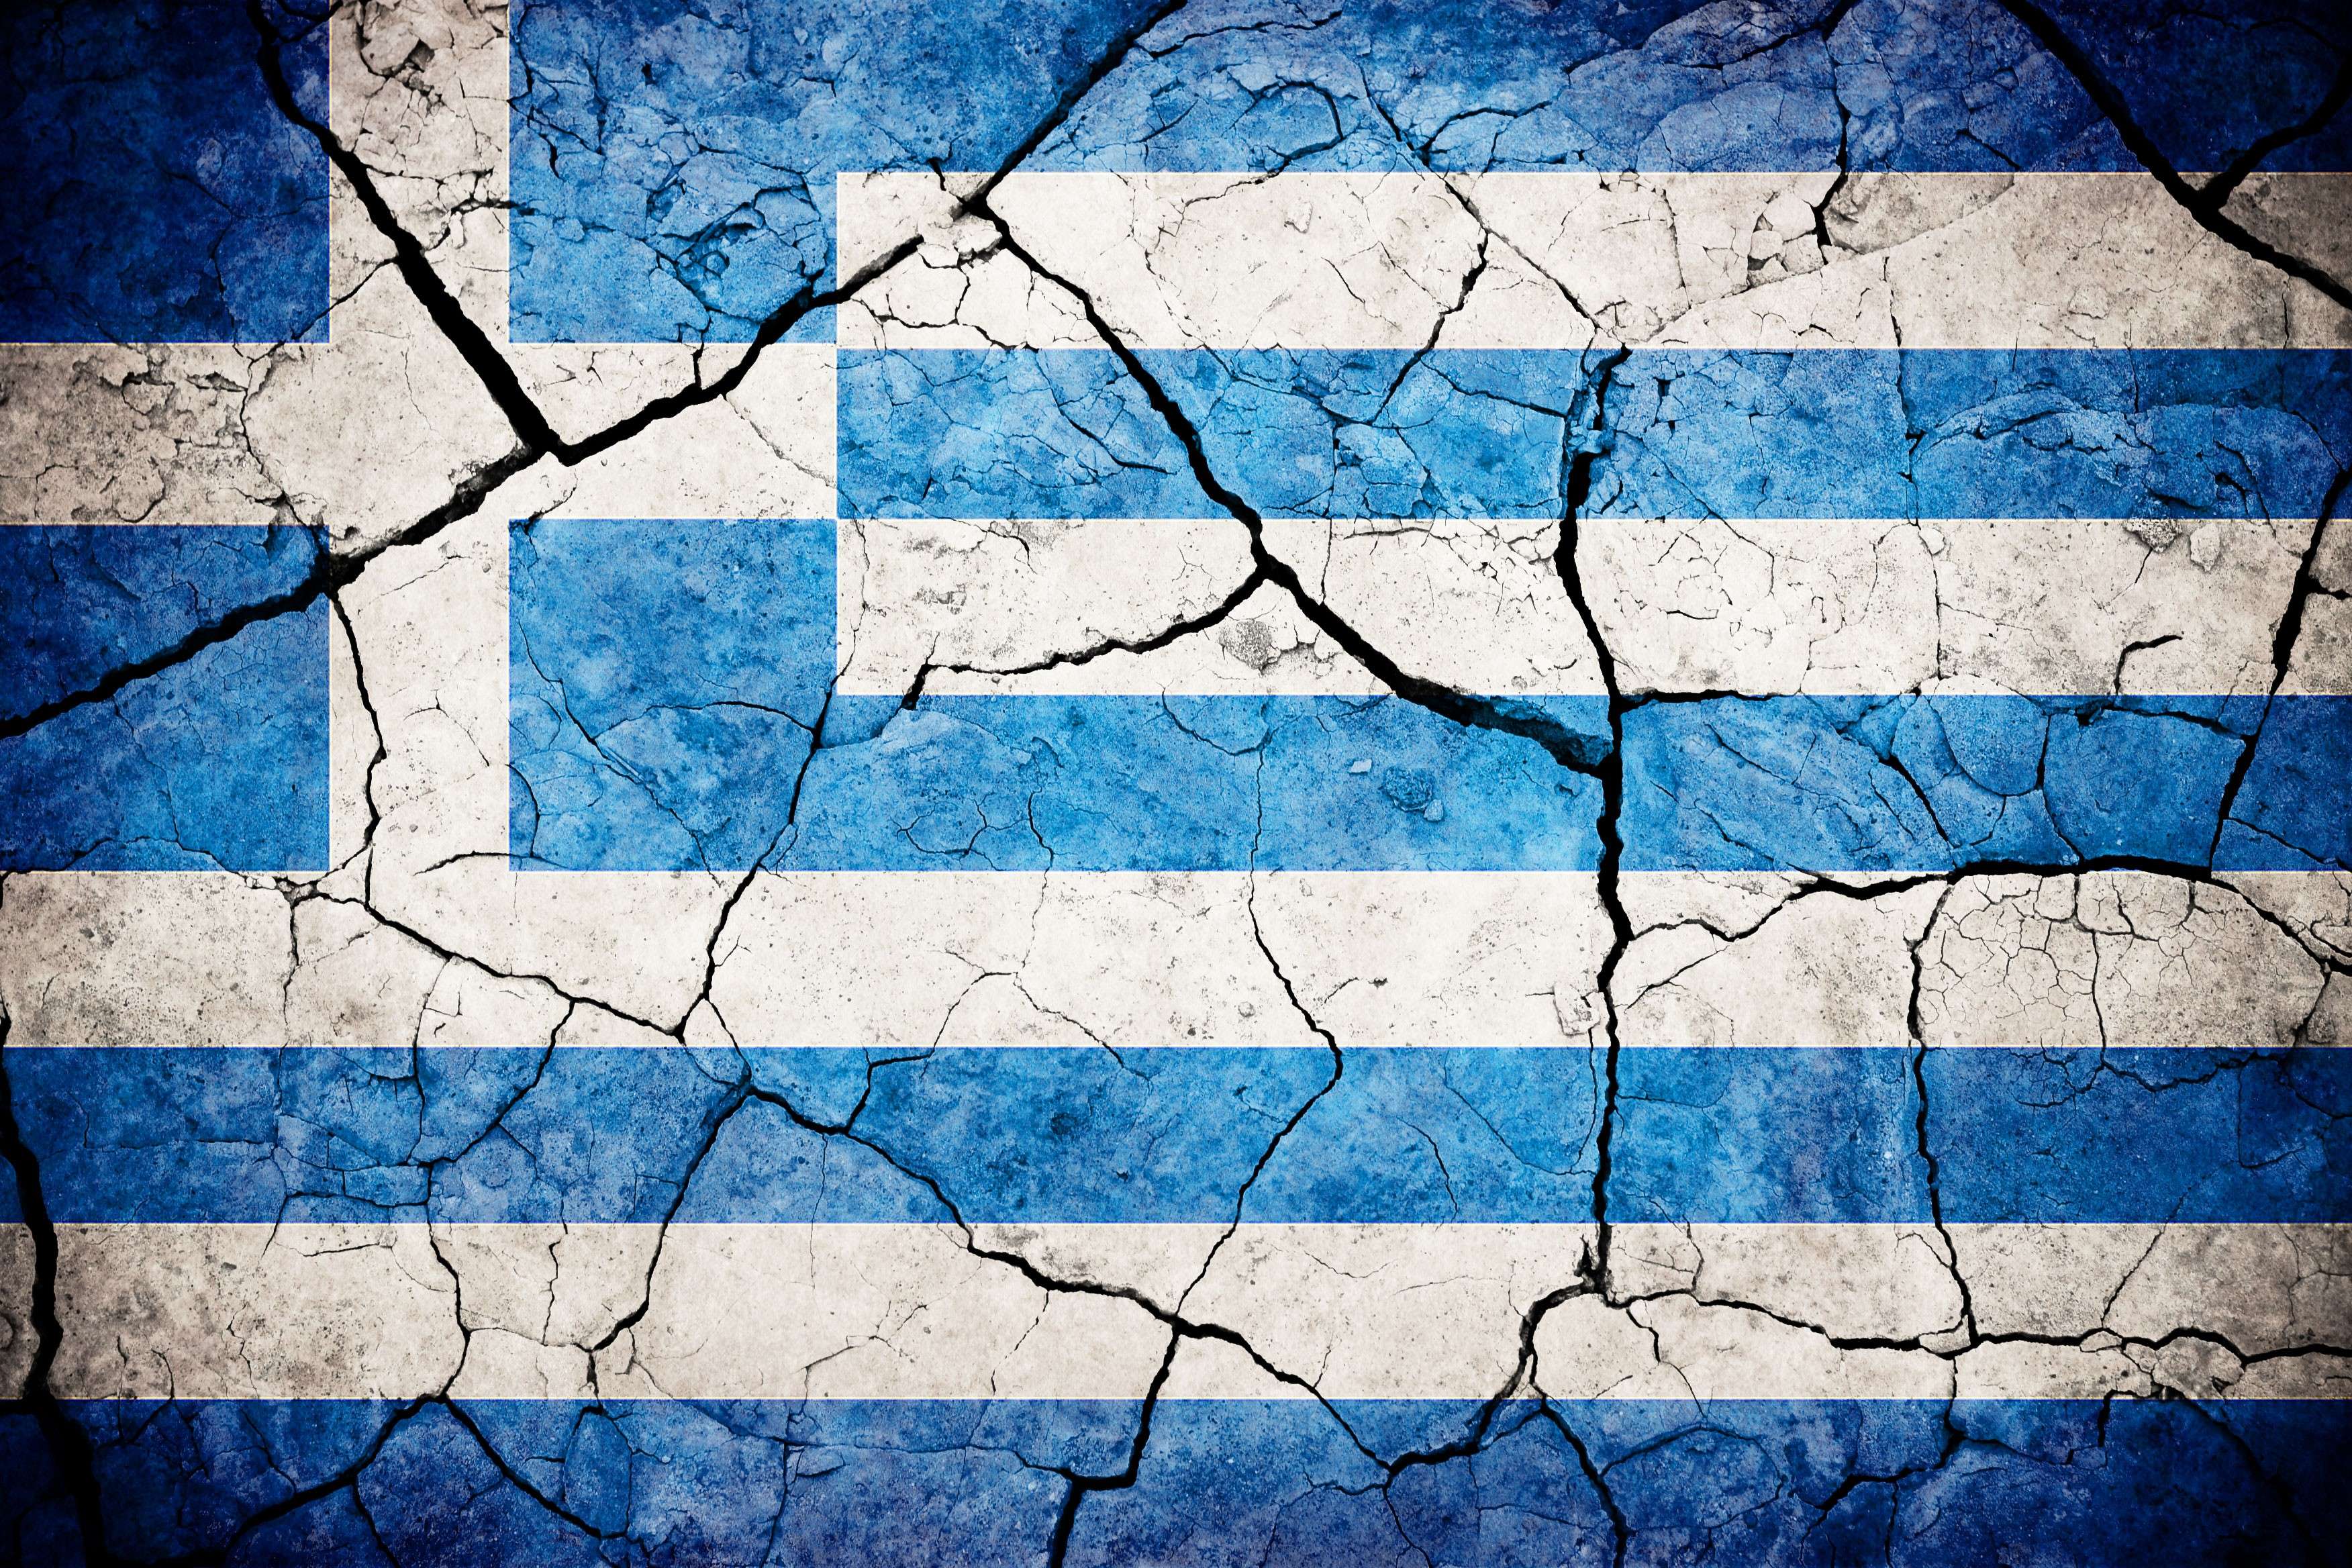 Η σημαία της Ελλάδας